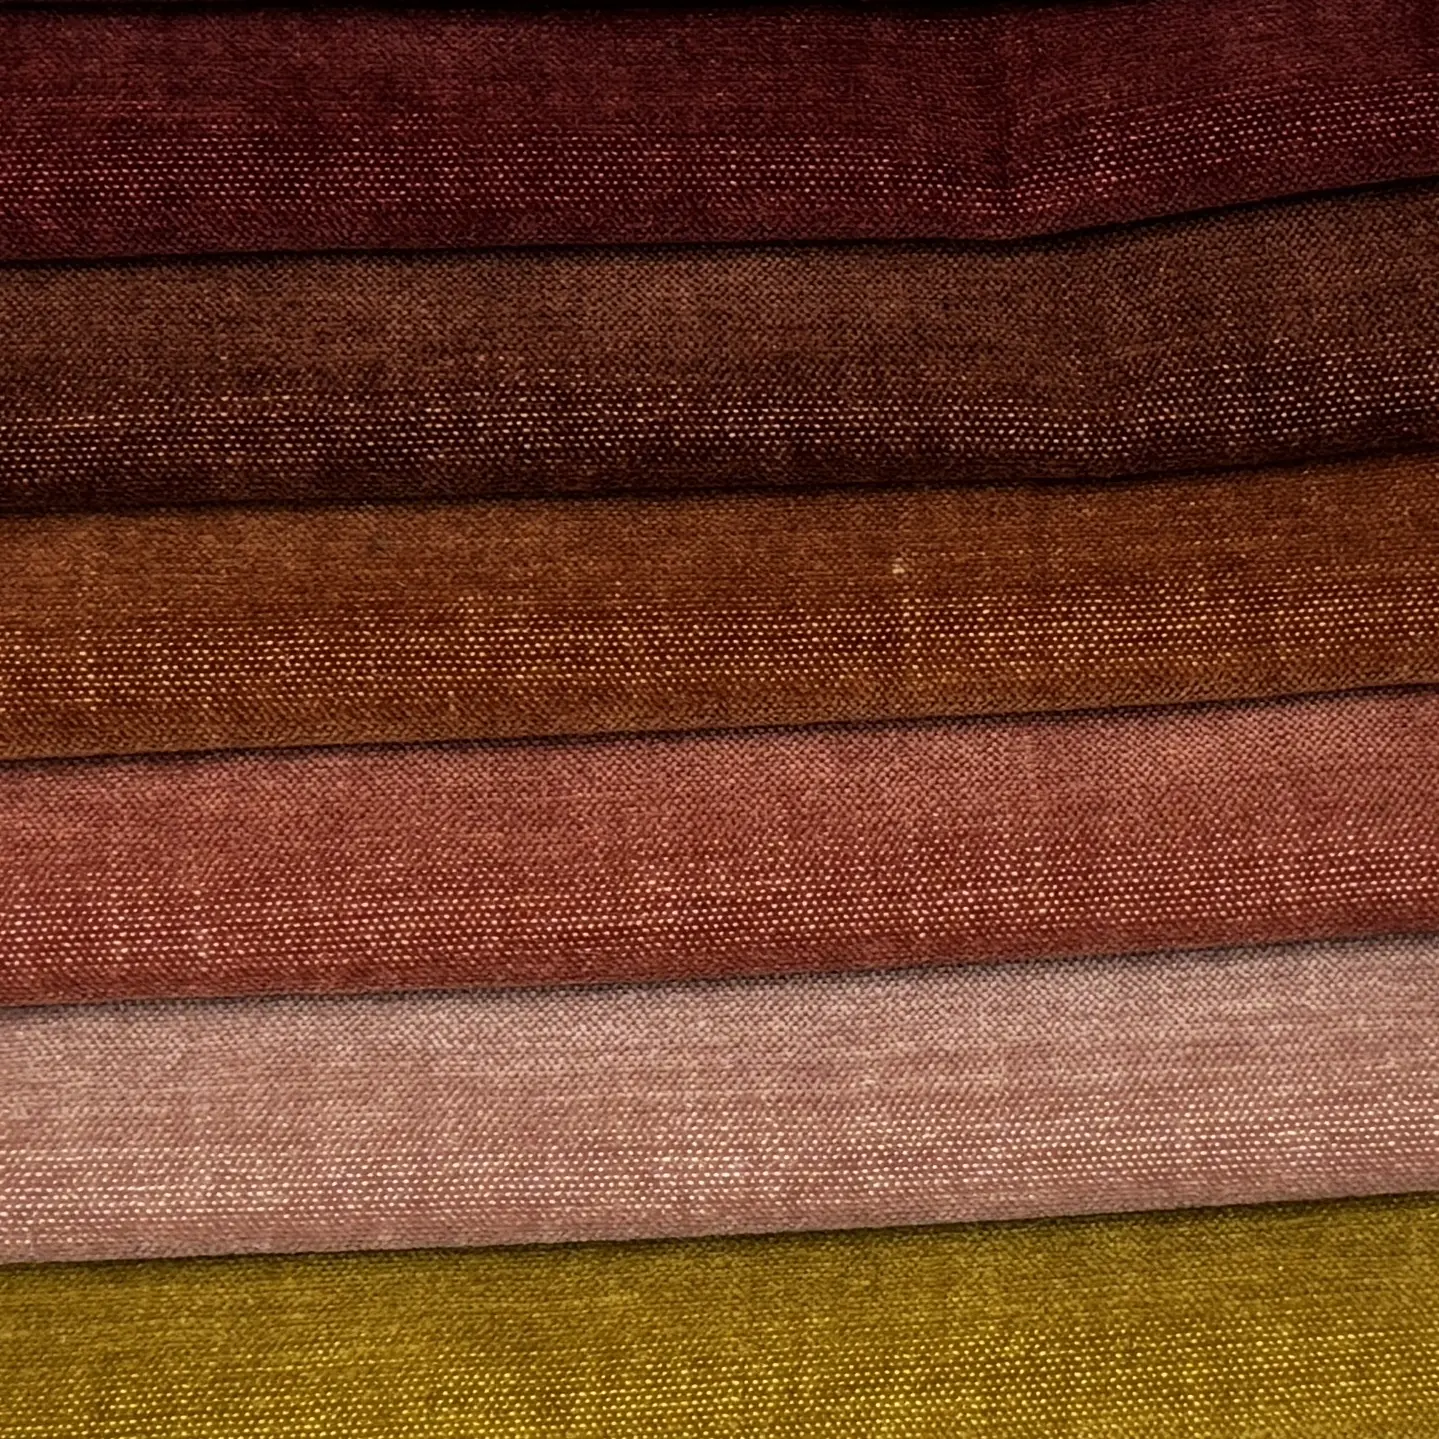 Weipai tissu de canapé de meuble en polyester 100% imperméable personnalisé tissu de chenille en velours hollandais pour rembourrage